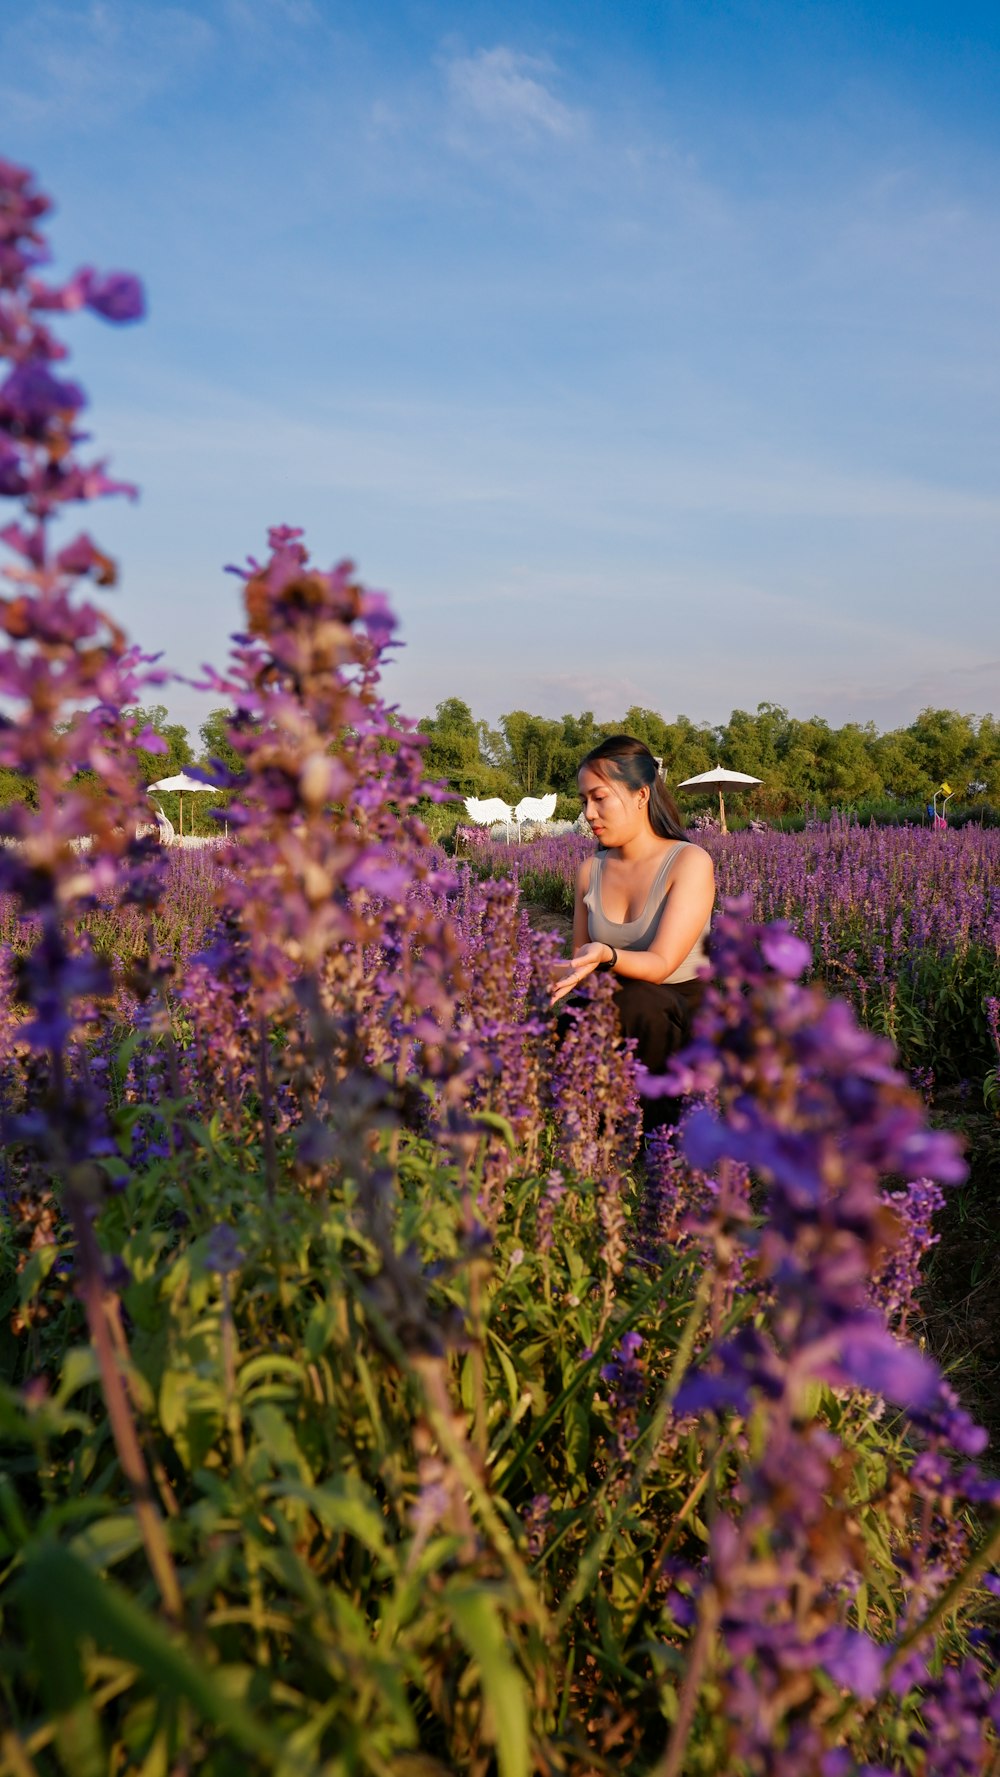 a woman standing in a field of purple flowers